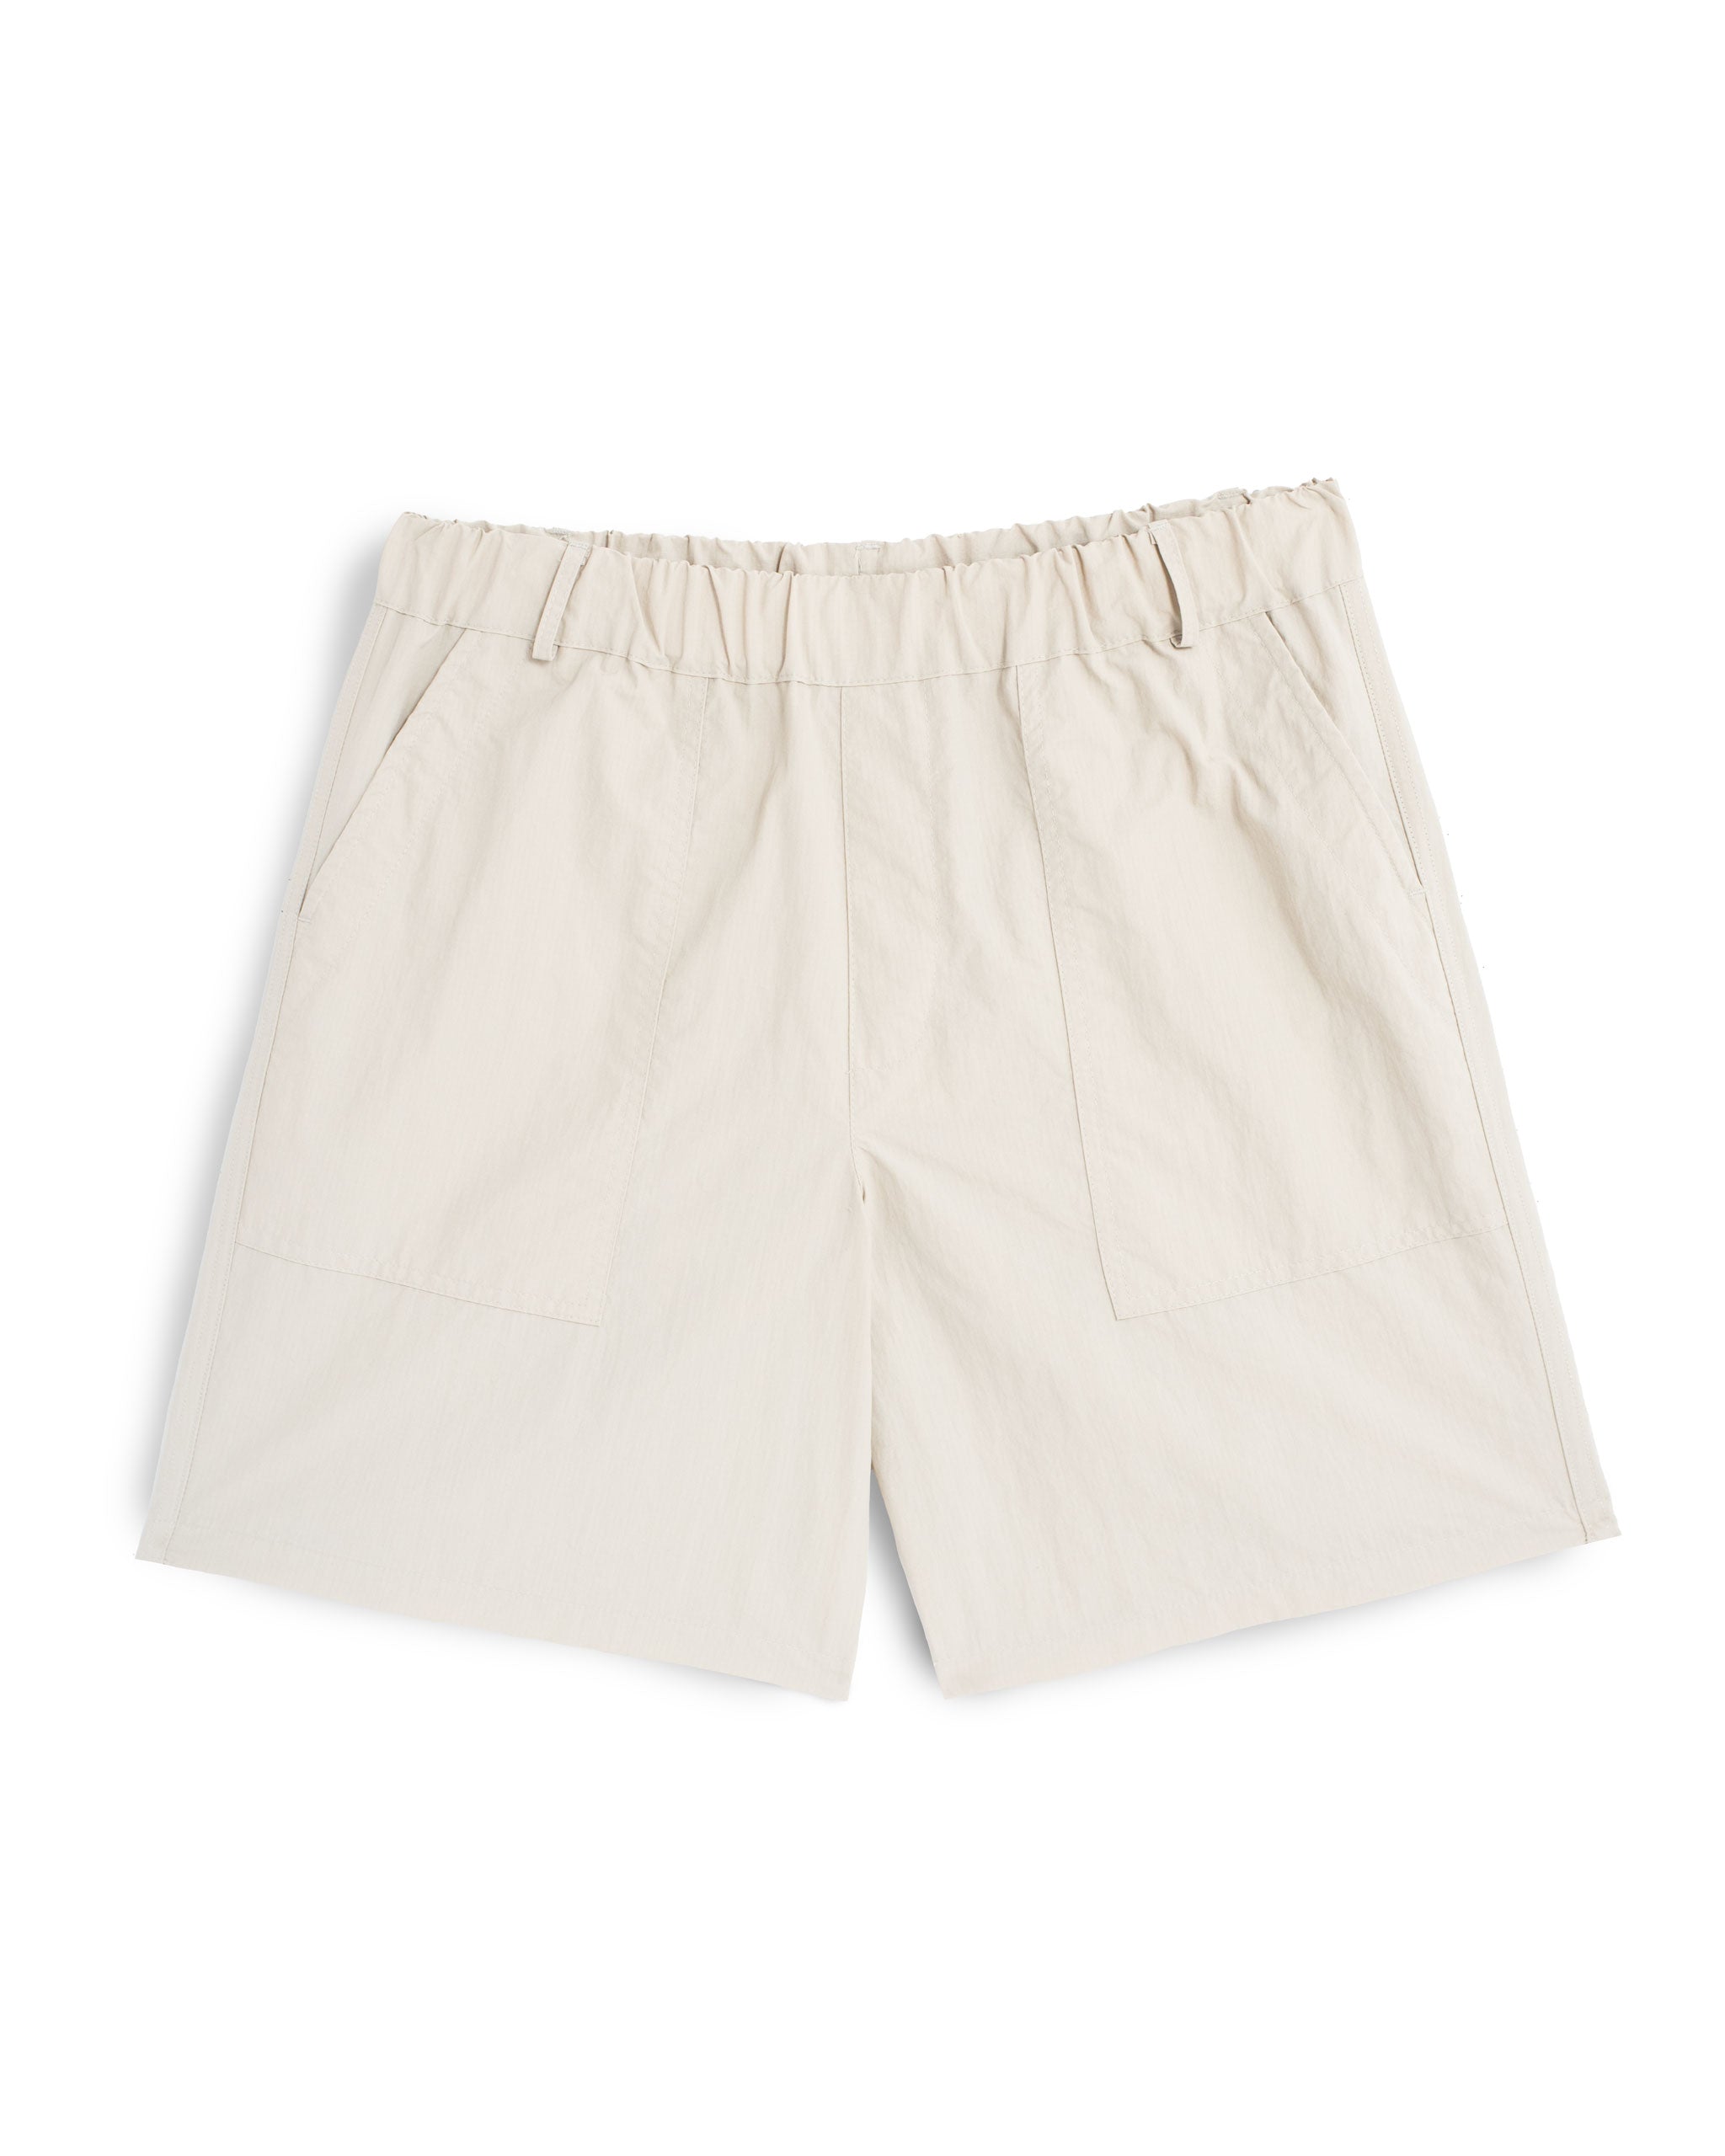 Bone coloured utility shorts in 100% Japanese nylon